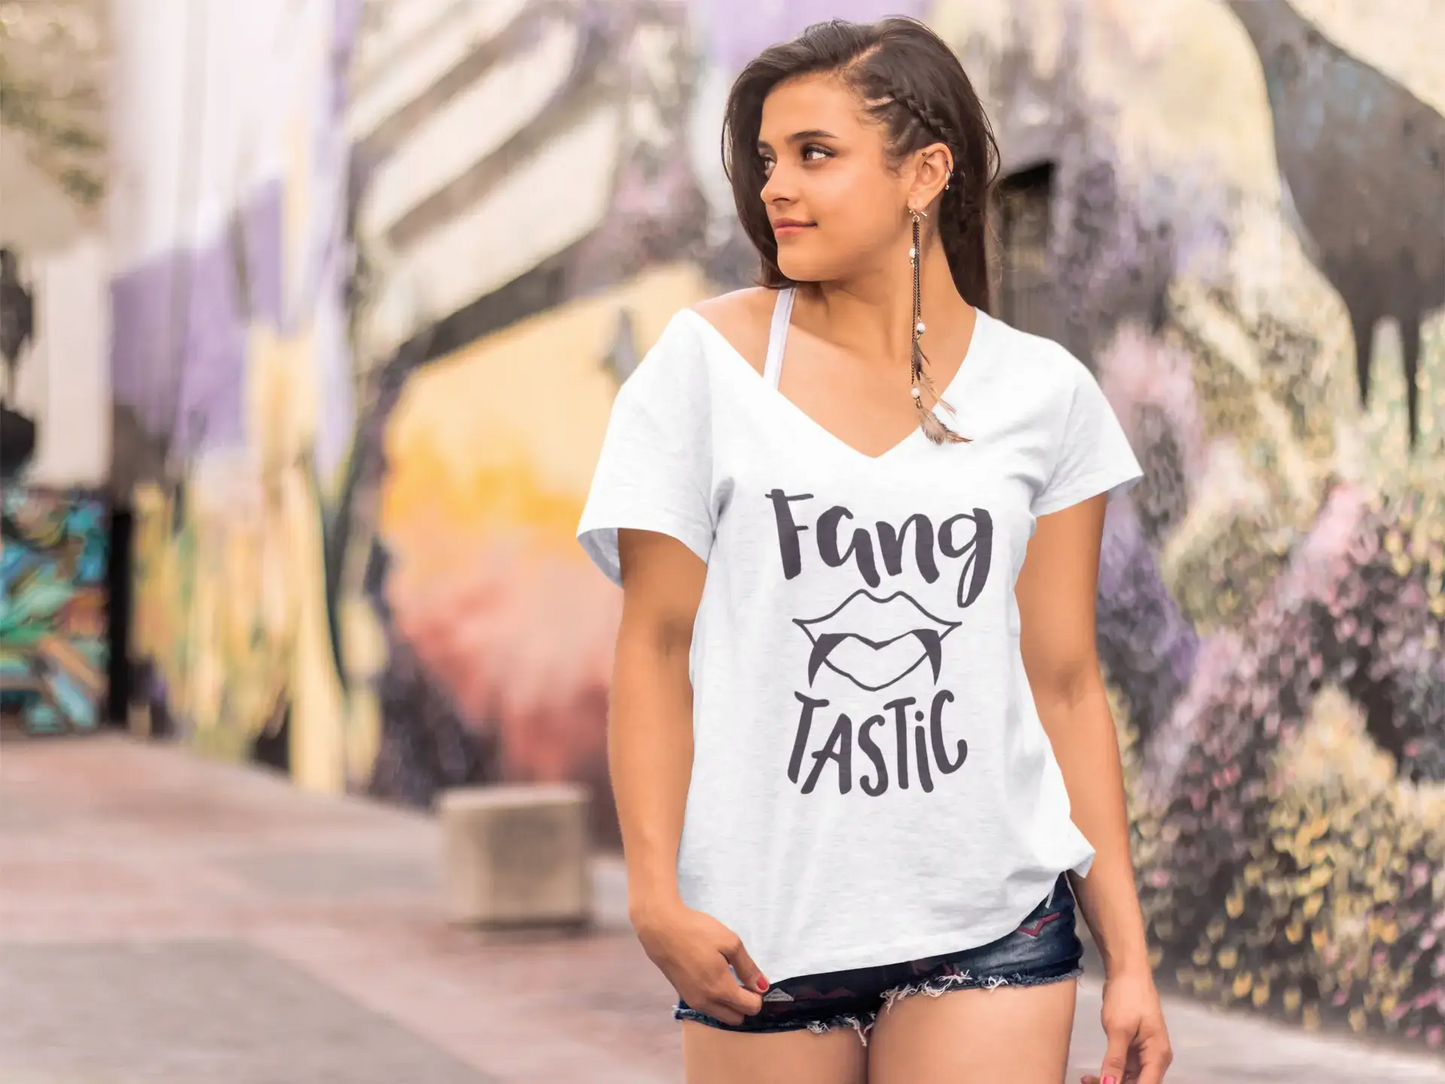 ULTRABASIC Damen T-Shirt Fang Tastic – Fantastische Kurzarm-T-Shirt-Oberteile